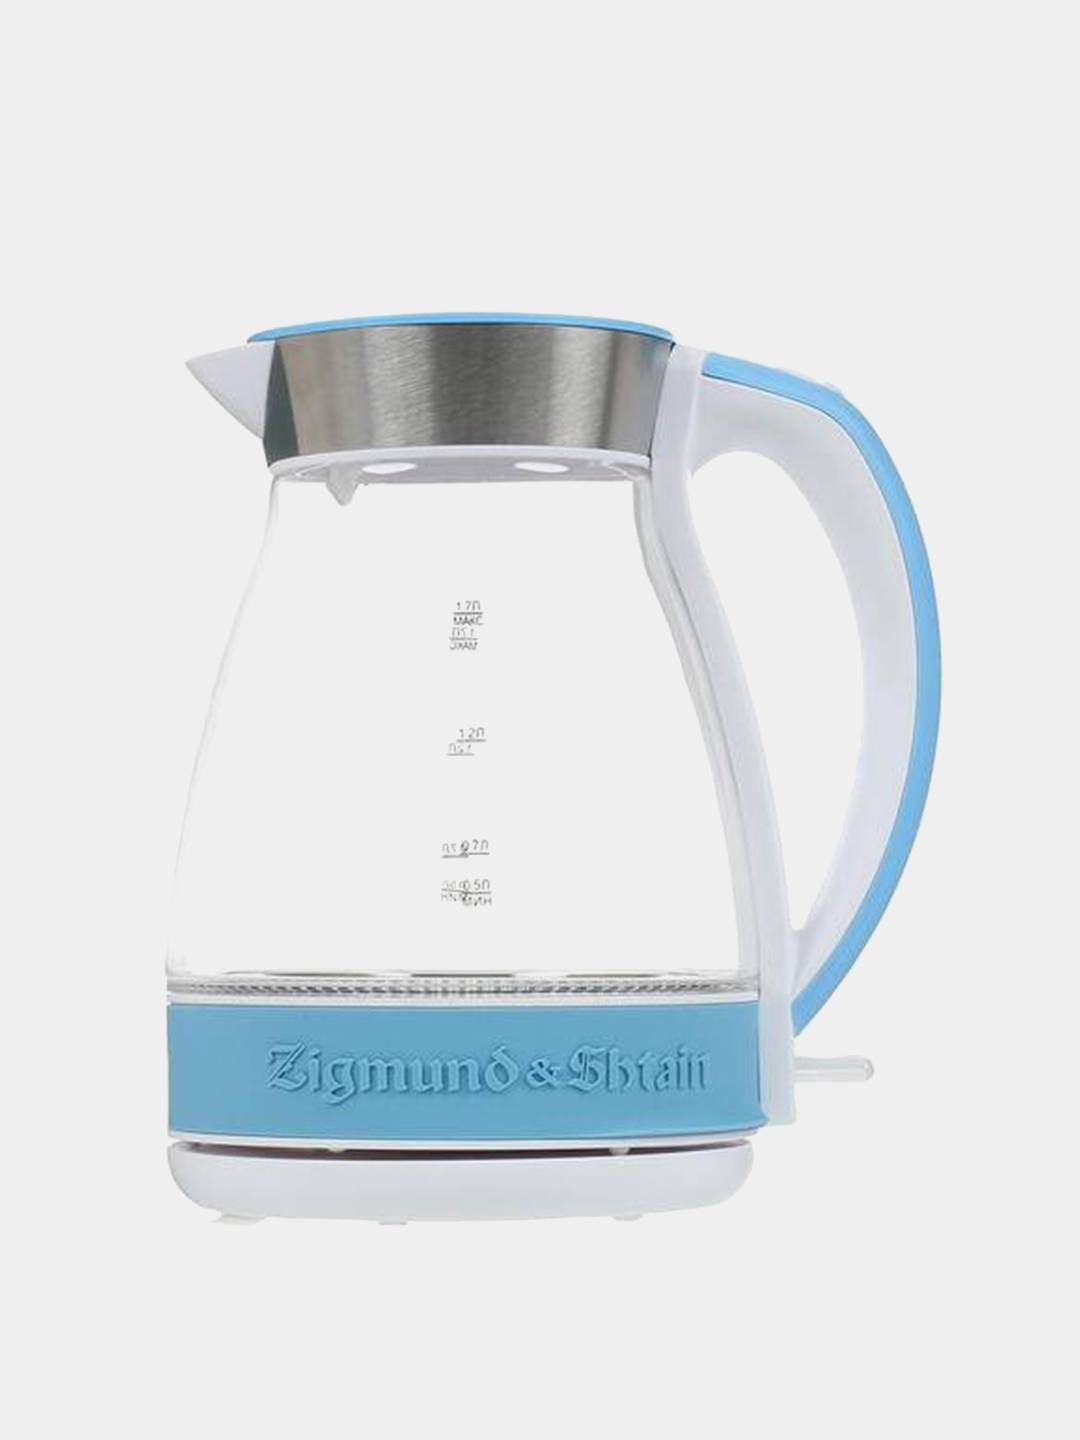 Чайник электрический Zigmund & Shtain KE-818 - купить чайник электрический KE-818 по выгодной цене в интернет-магазине